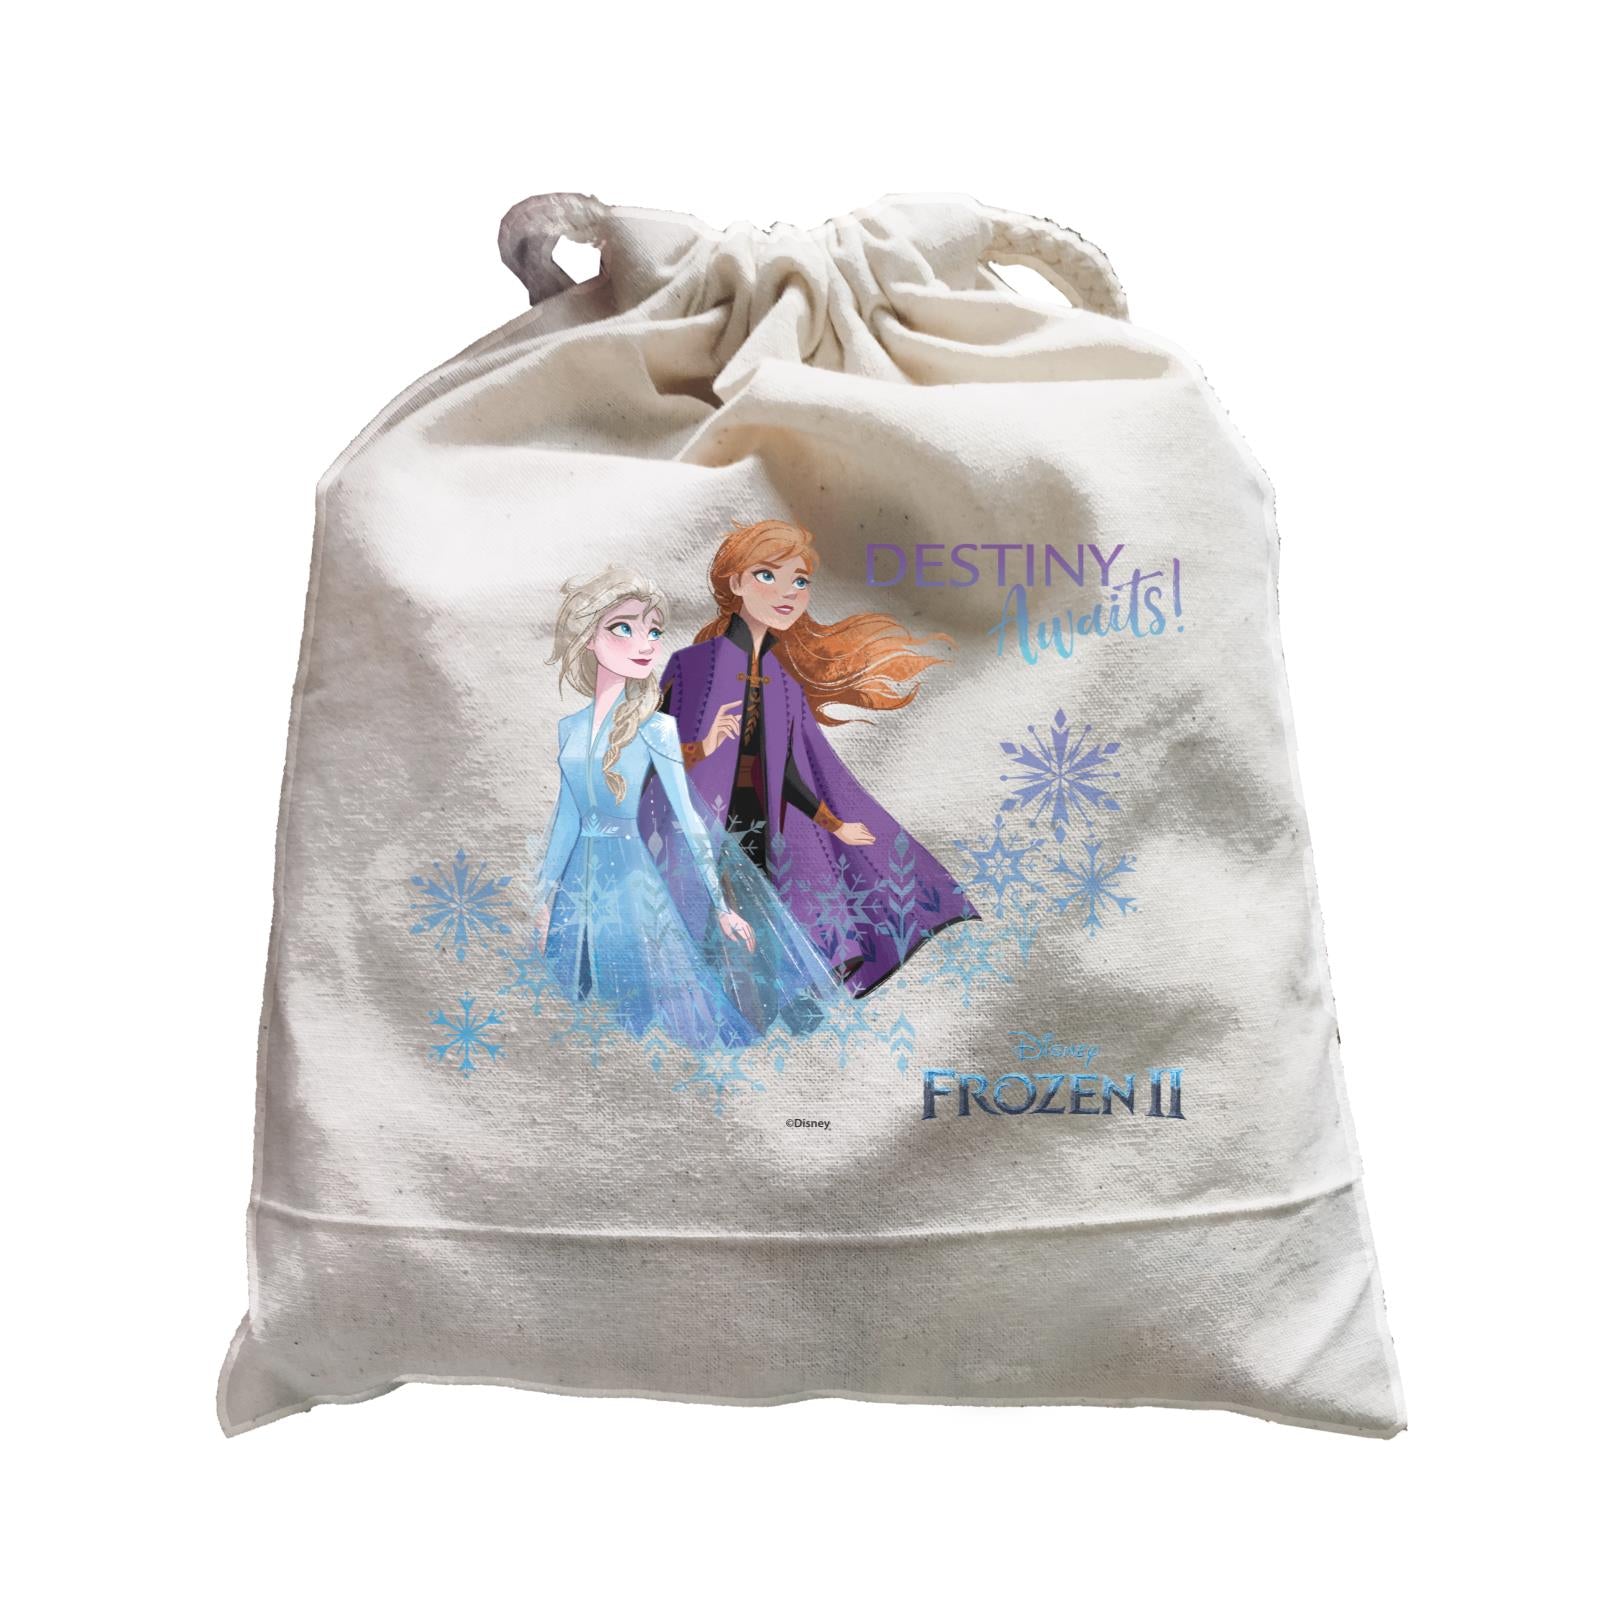 Disney Frozen 2 Snowflake Destiny Awaits With Elsa And Anna Satchel